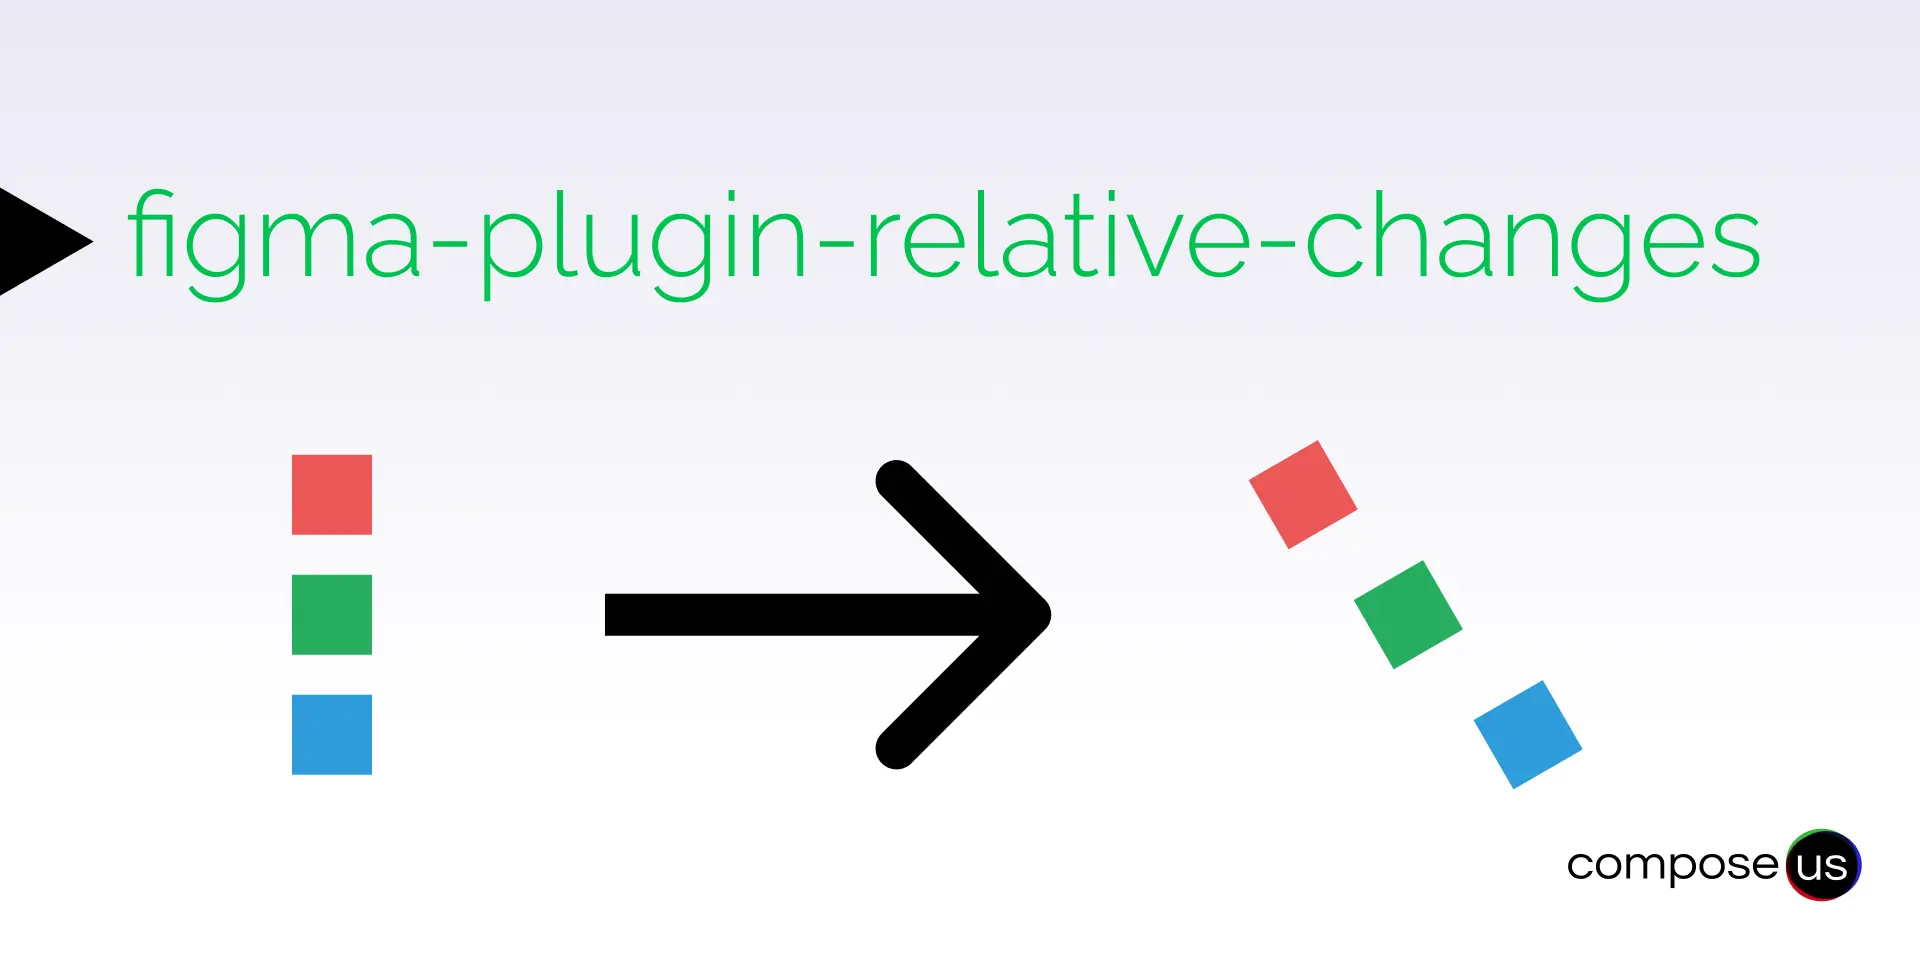 Blog Titel: Side Project Figma Plug-in Relative Changes. Zusammenfassung: undefined